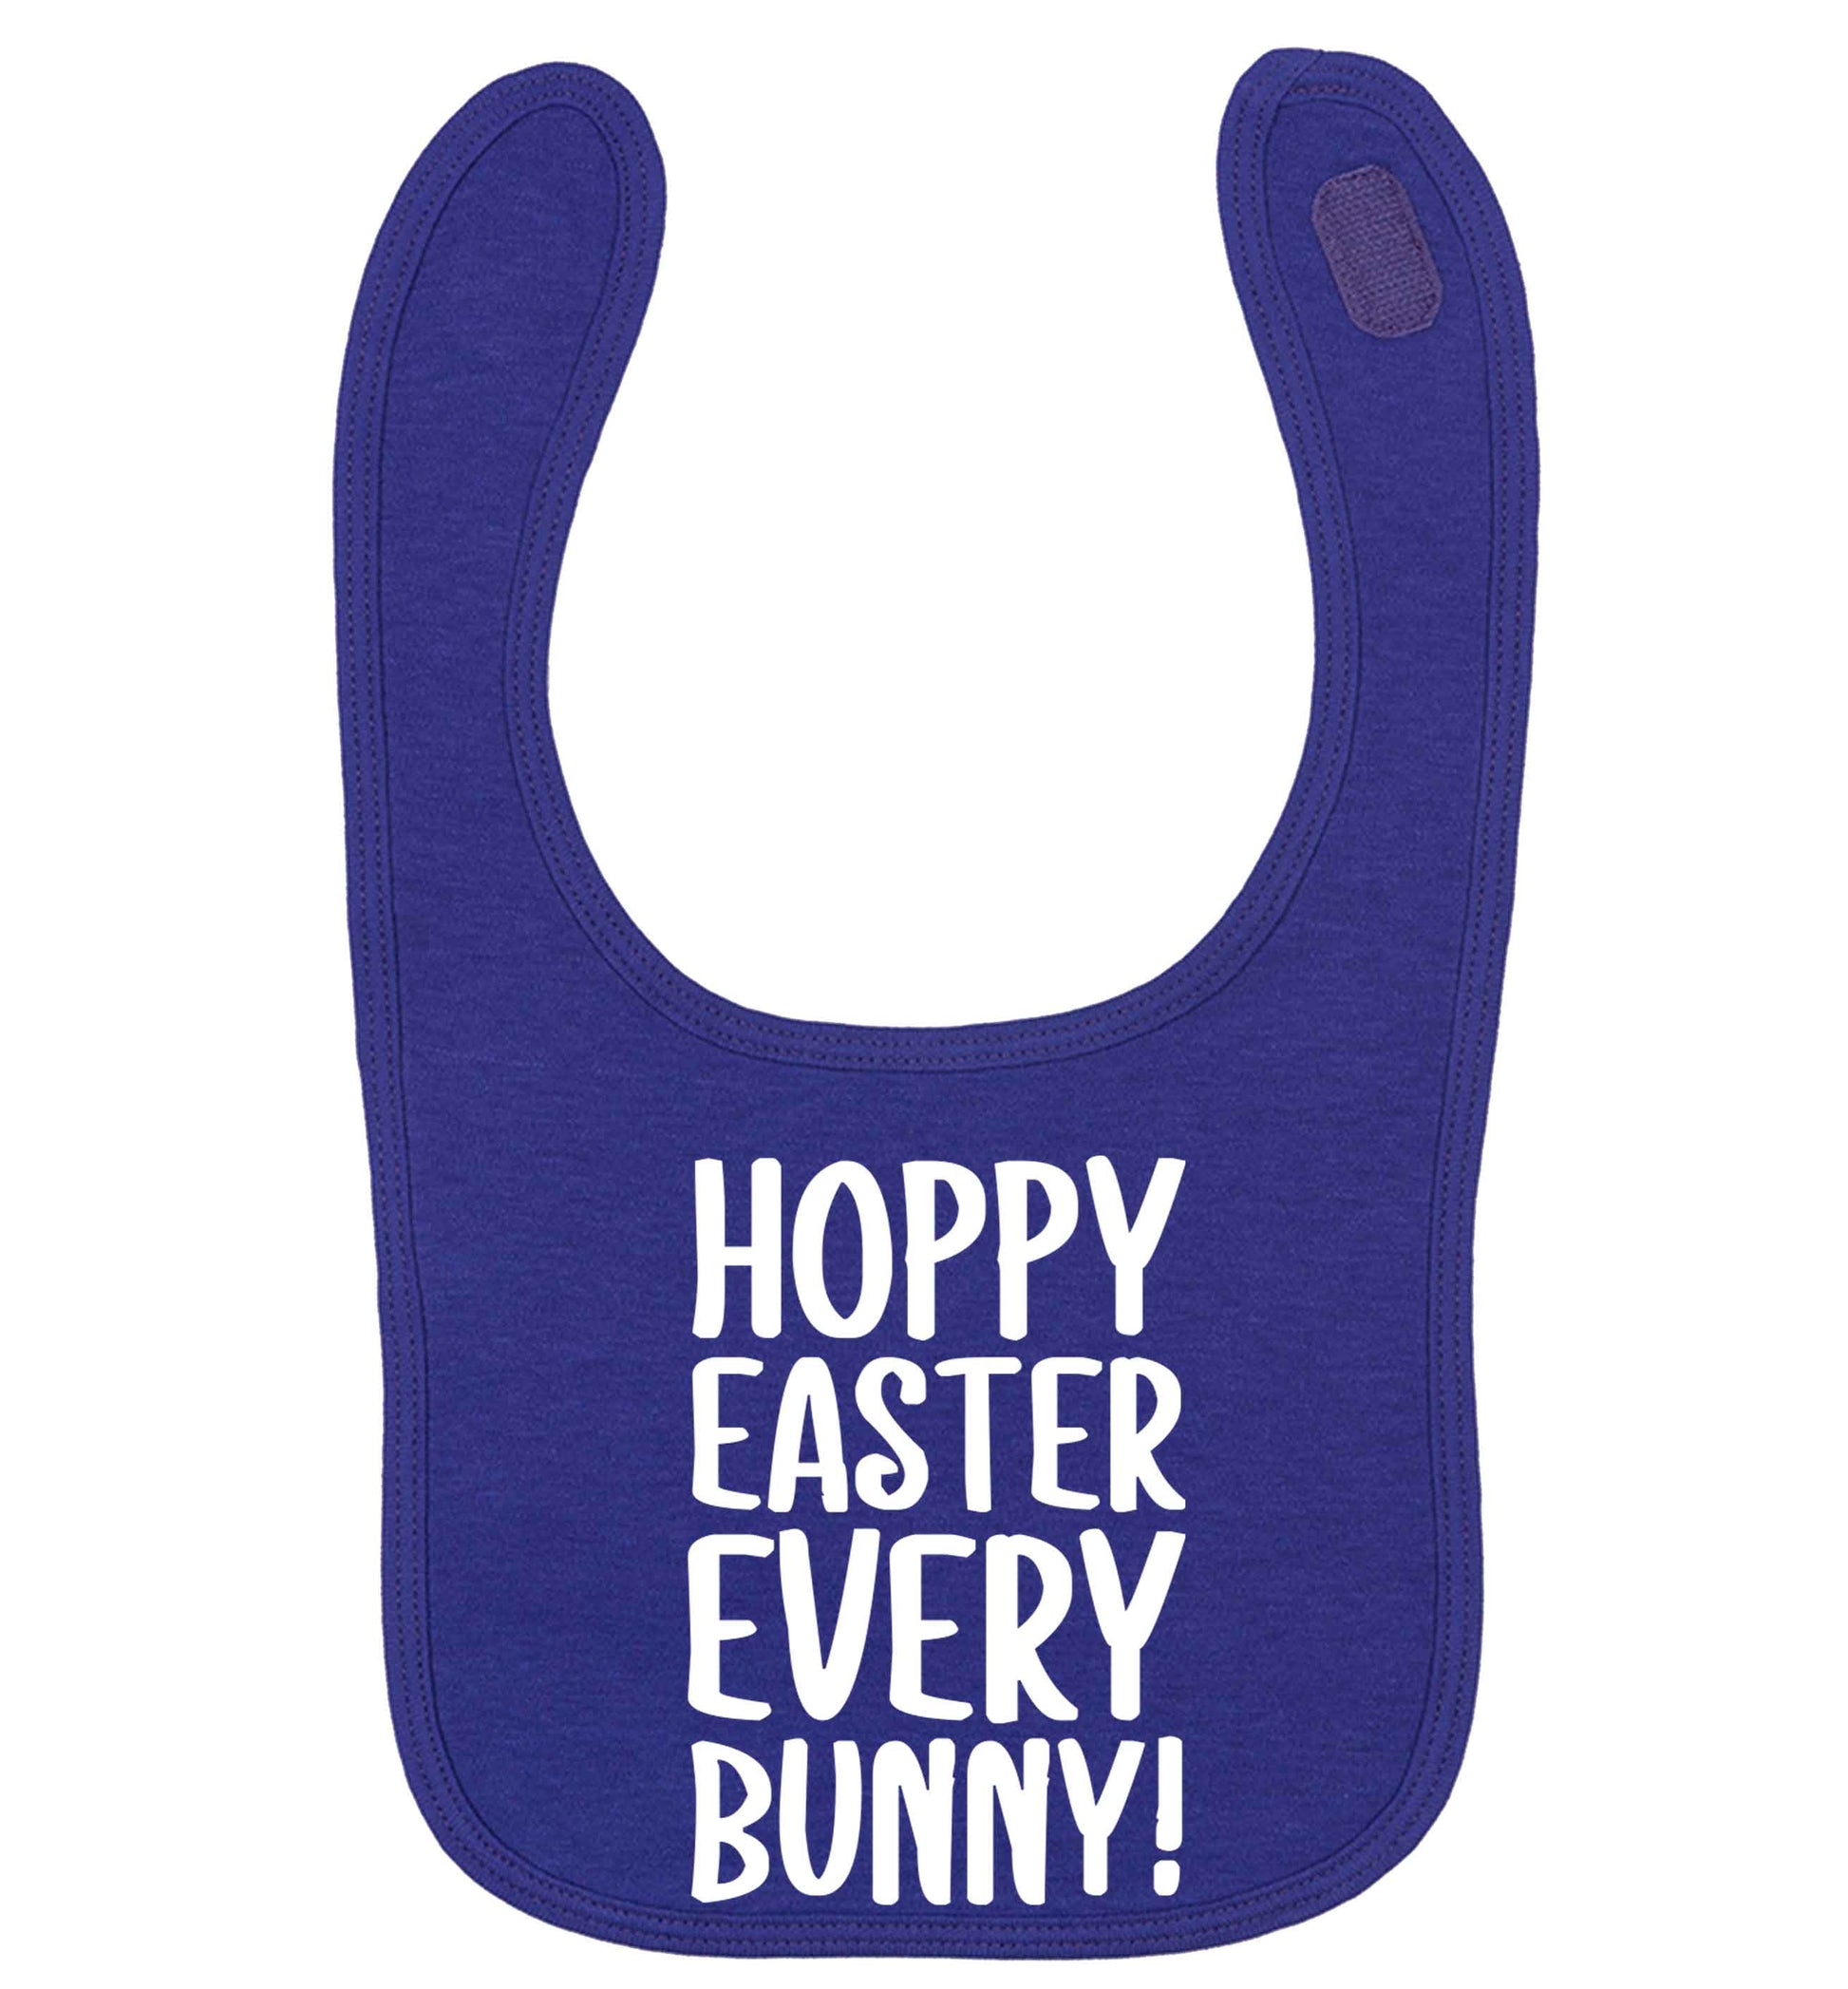 Hoppy Easter every bunny! | baby bib